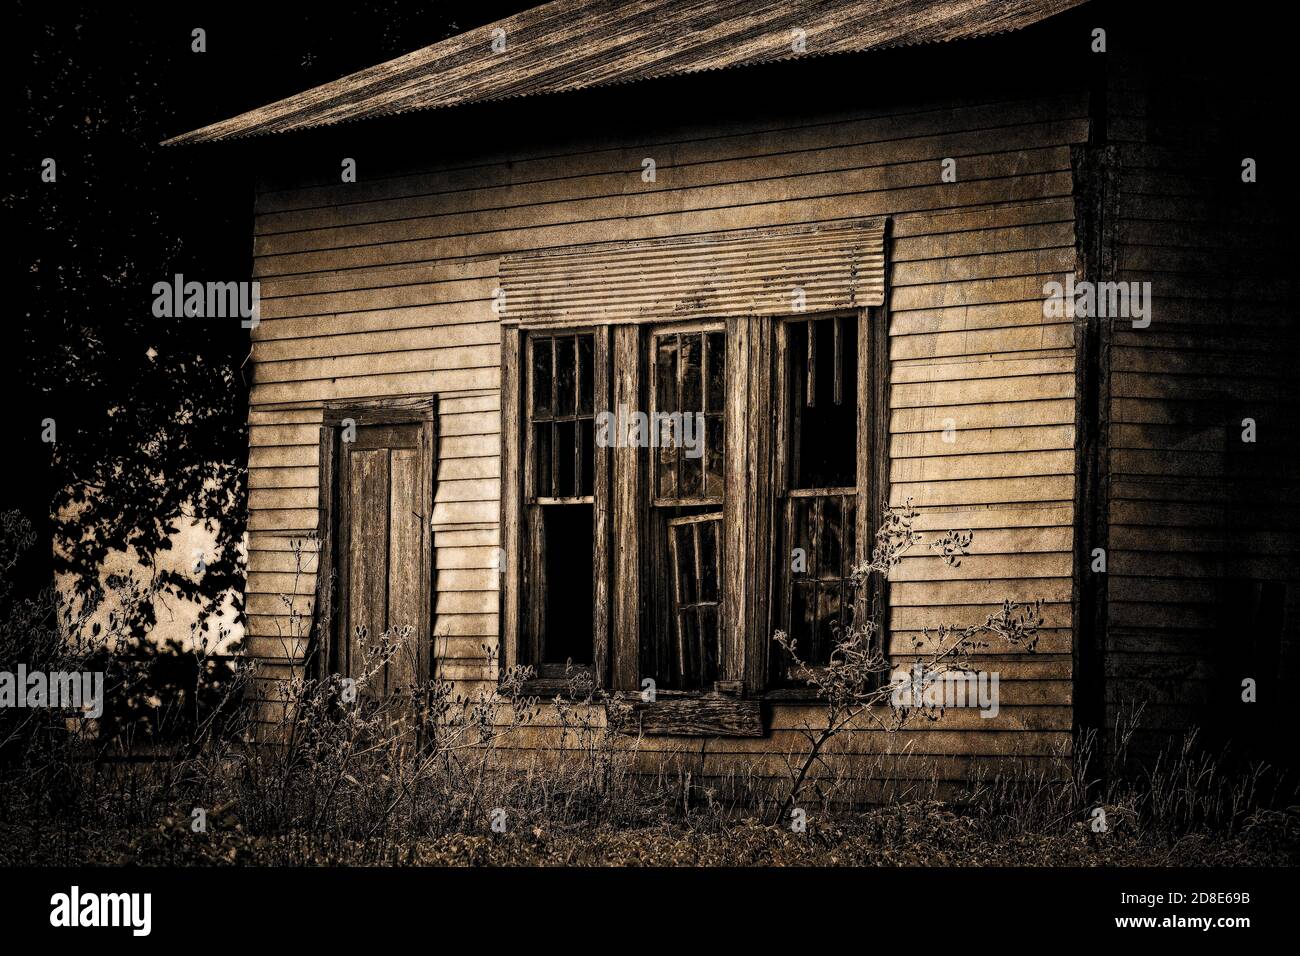 Vue latérale d'une ferme abandonnée avec trois fenêtres cassées et une porte. Photographié sur les rods arrière du Texas Hill Country. Banque D'Images